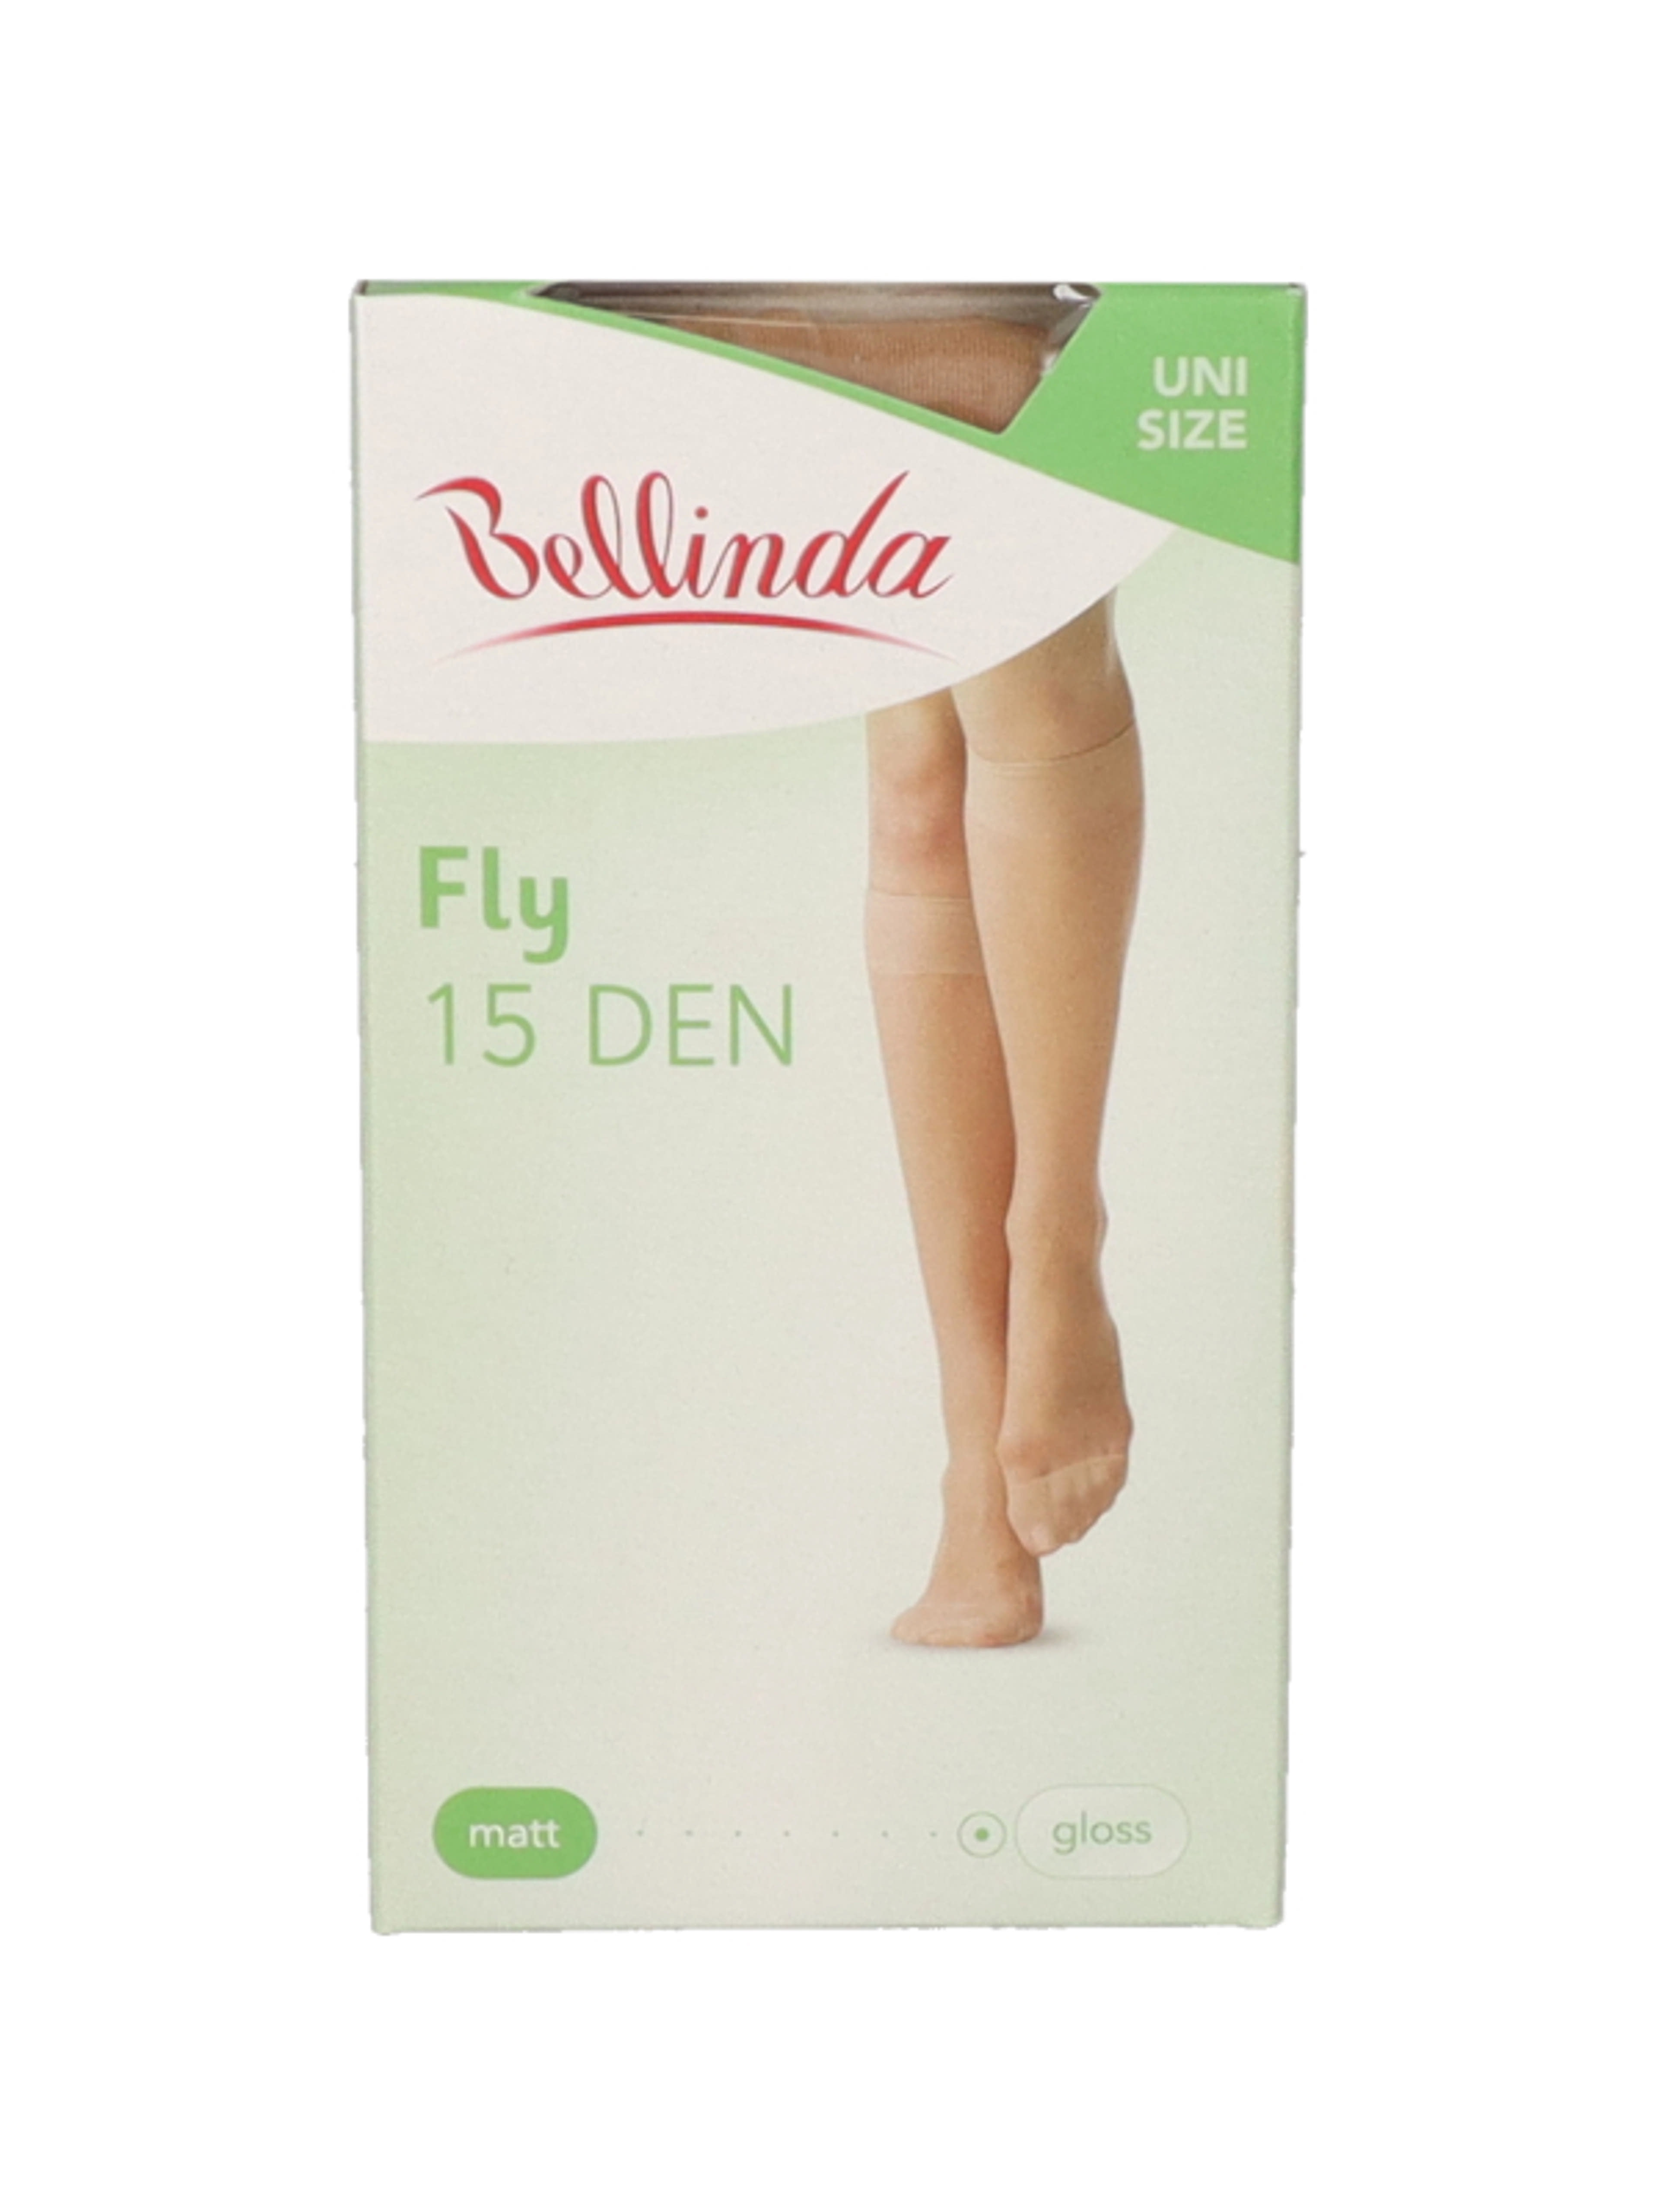 Bellinda Fly 15 térdfix, almond, unisex - 1 db-1